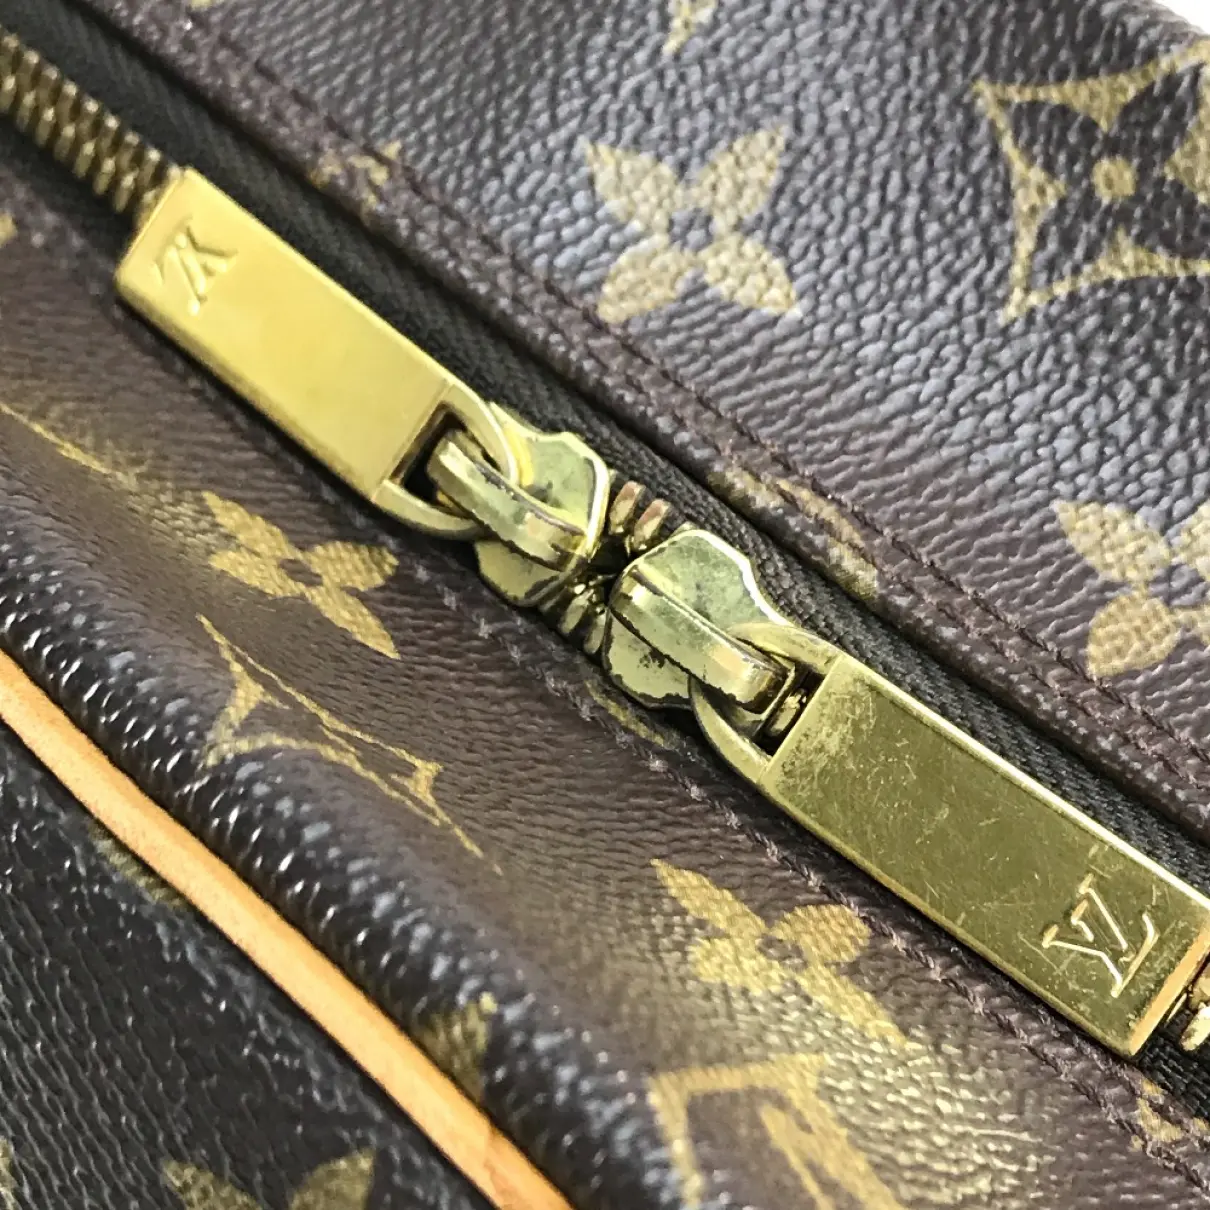 Cite cloth handbag Louis Vuitton